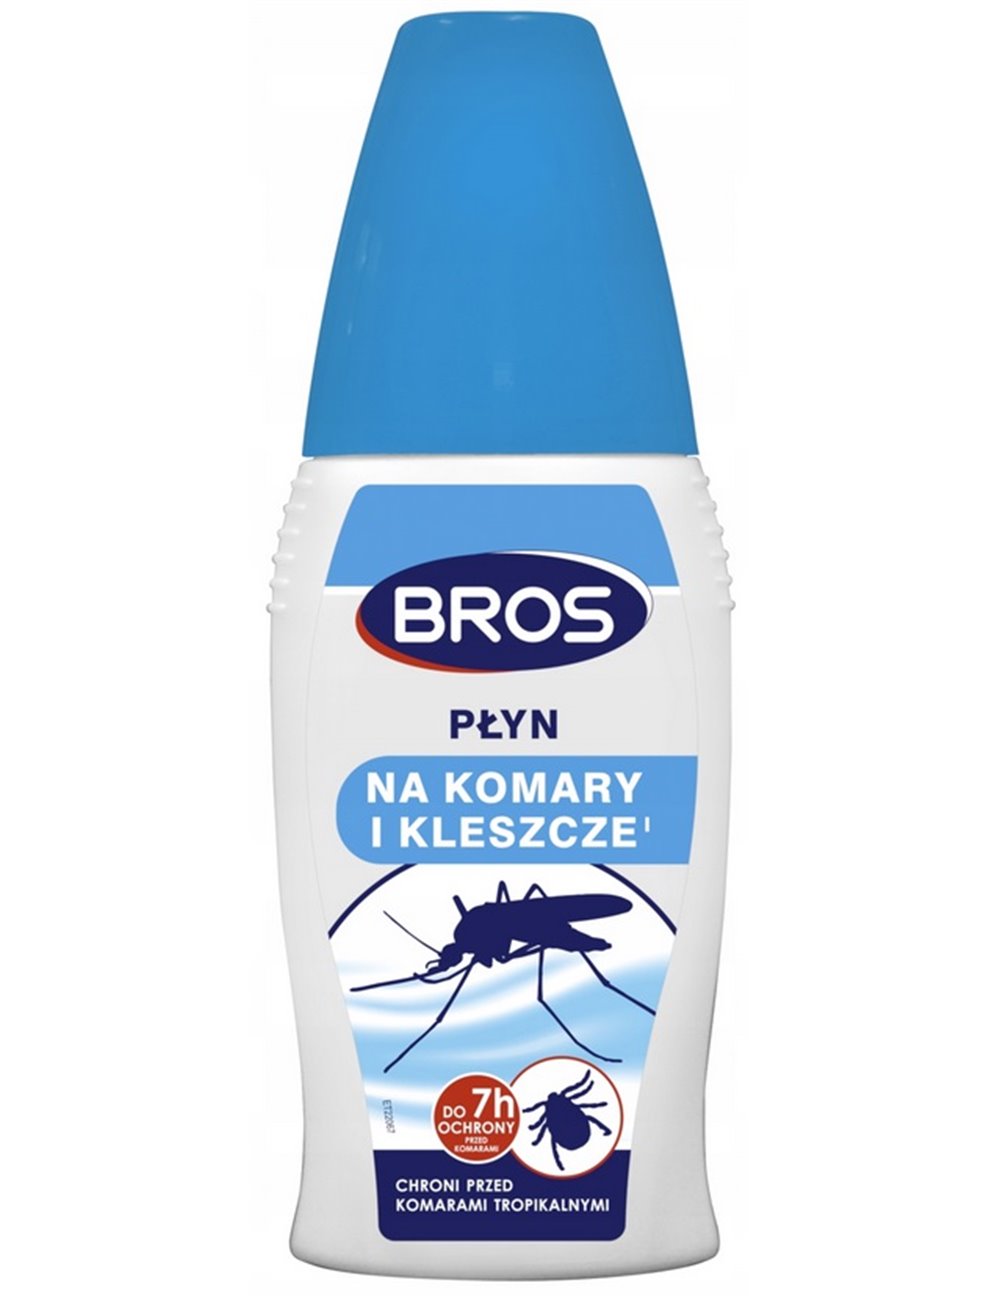 Bros Płyn Na Komary i Kleszcze 50ml – chroni przed komarami tropikalnymi